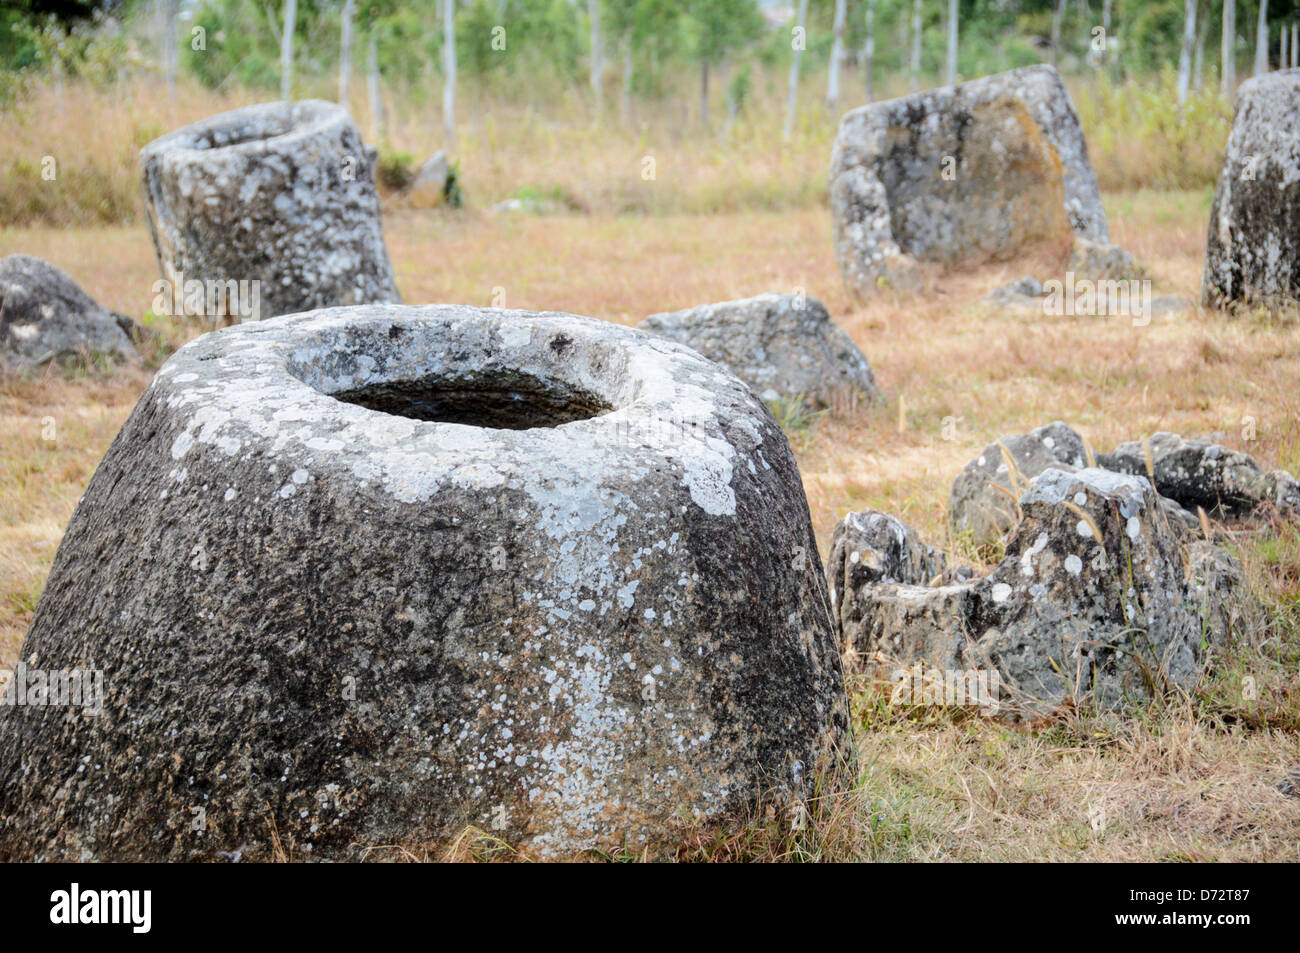 PHONSAVAN, Laos - einige der Steingläser an Standort 1 der Ebene der Gläser im nördlichen Zentrum von Laos. Über das Alter und den Zweck der tausenden von Steingläsern in der Region ist noch viel unbekannt. Die meisten Berichte stammen von vor mindestens ein paar Tausend Jahren, und es wurden Theorien aufgestellt, dass sie in Bestattungsritualen verwendet wurden. Stockfoto